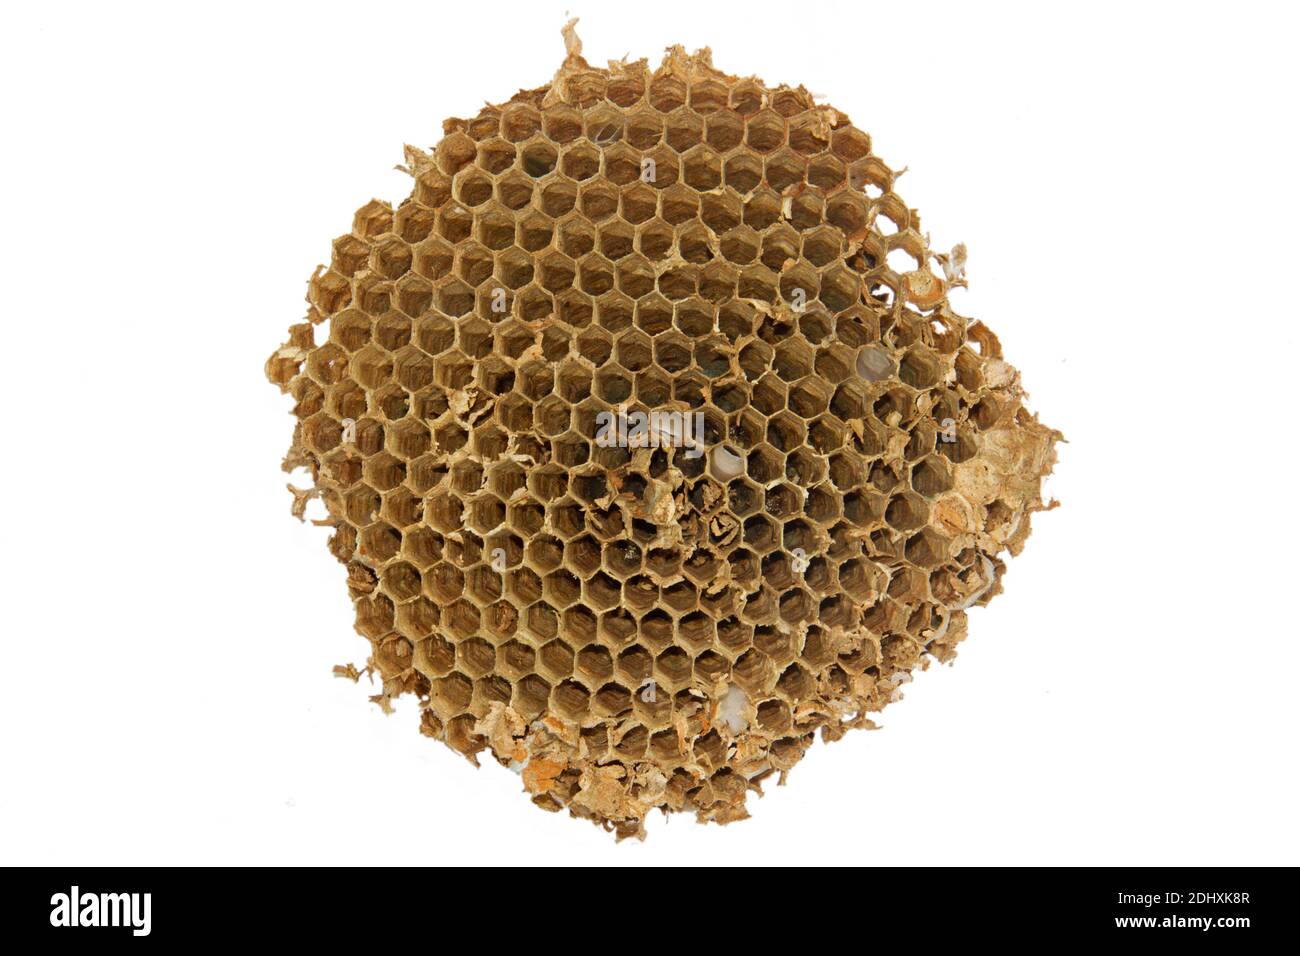 Gros plan du nid de l'hornet européen, composé de cellules hexagonales, isolées sur blanc Banque D'Images